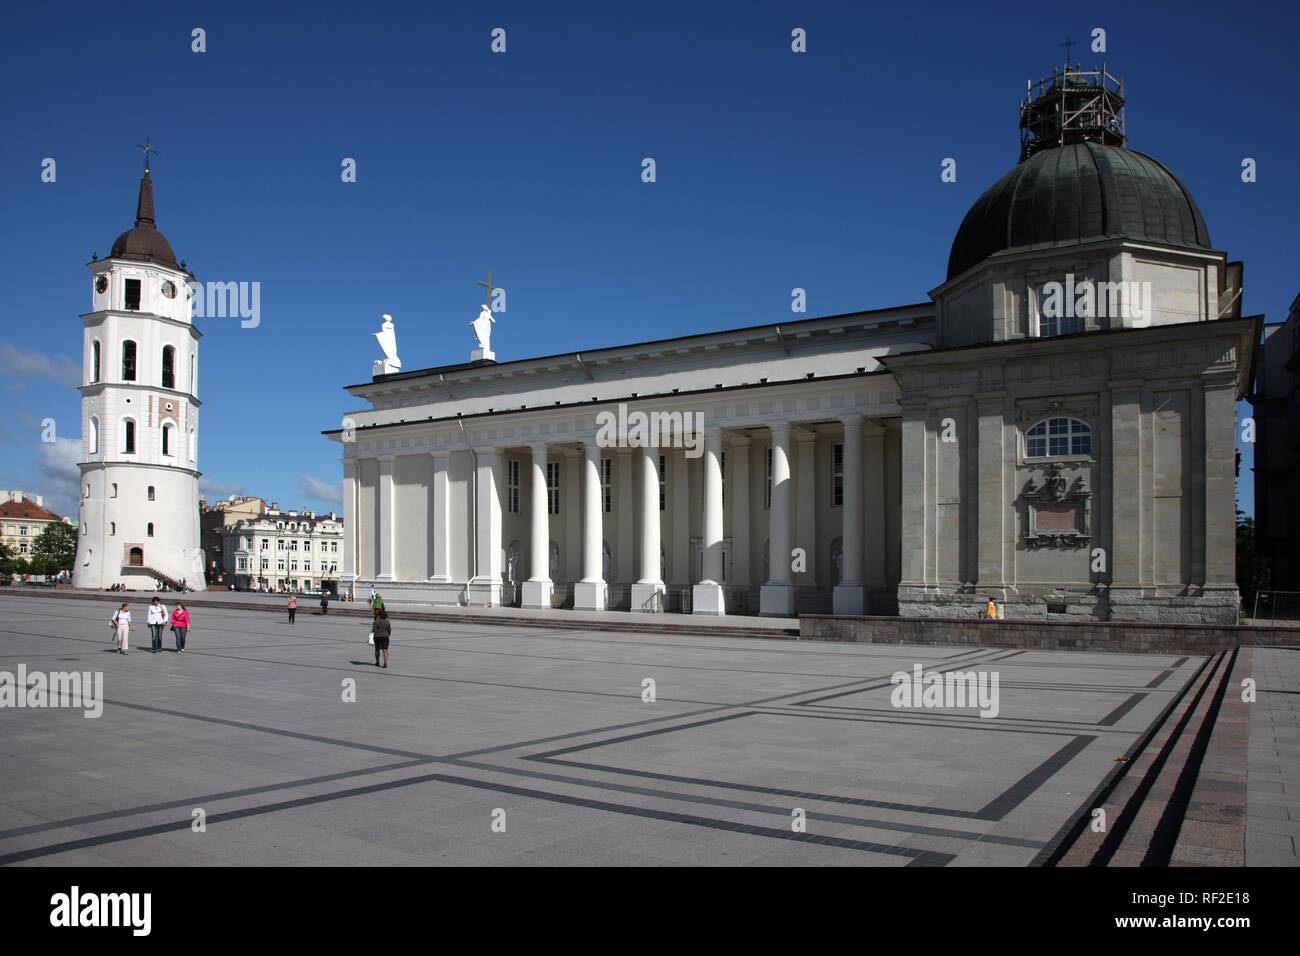 La Cathédrale Saint-stanislas avec clocher détaché, Varpine, Place de la Cathédrale, Vilnius, Lituanie, Pays Baltes Banque D'Images